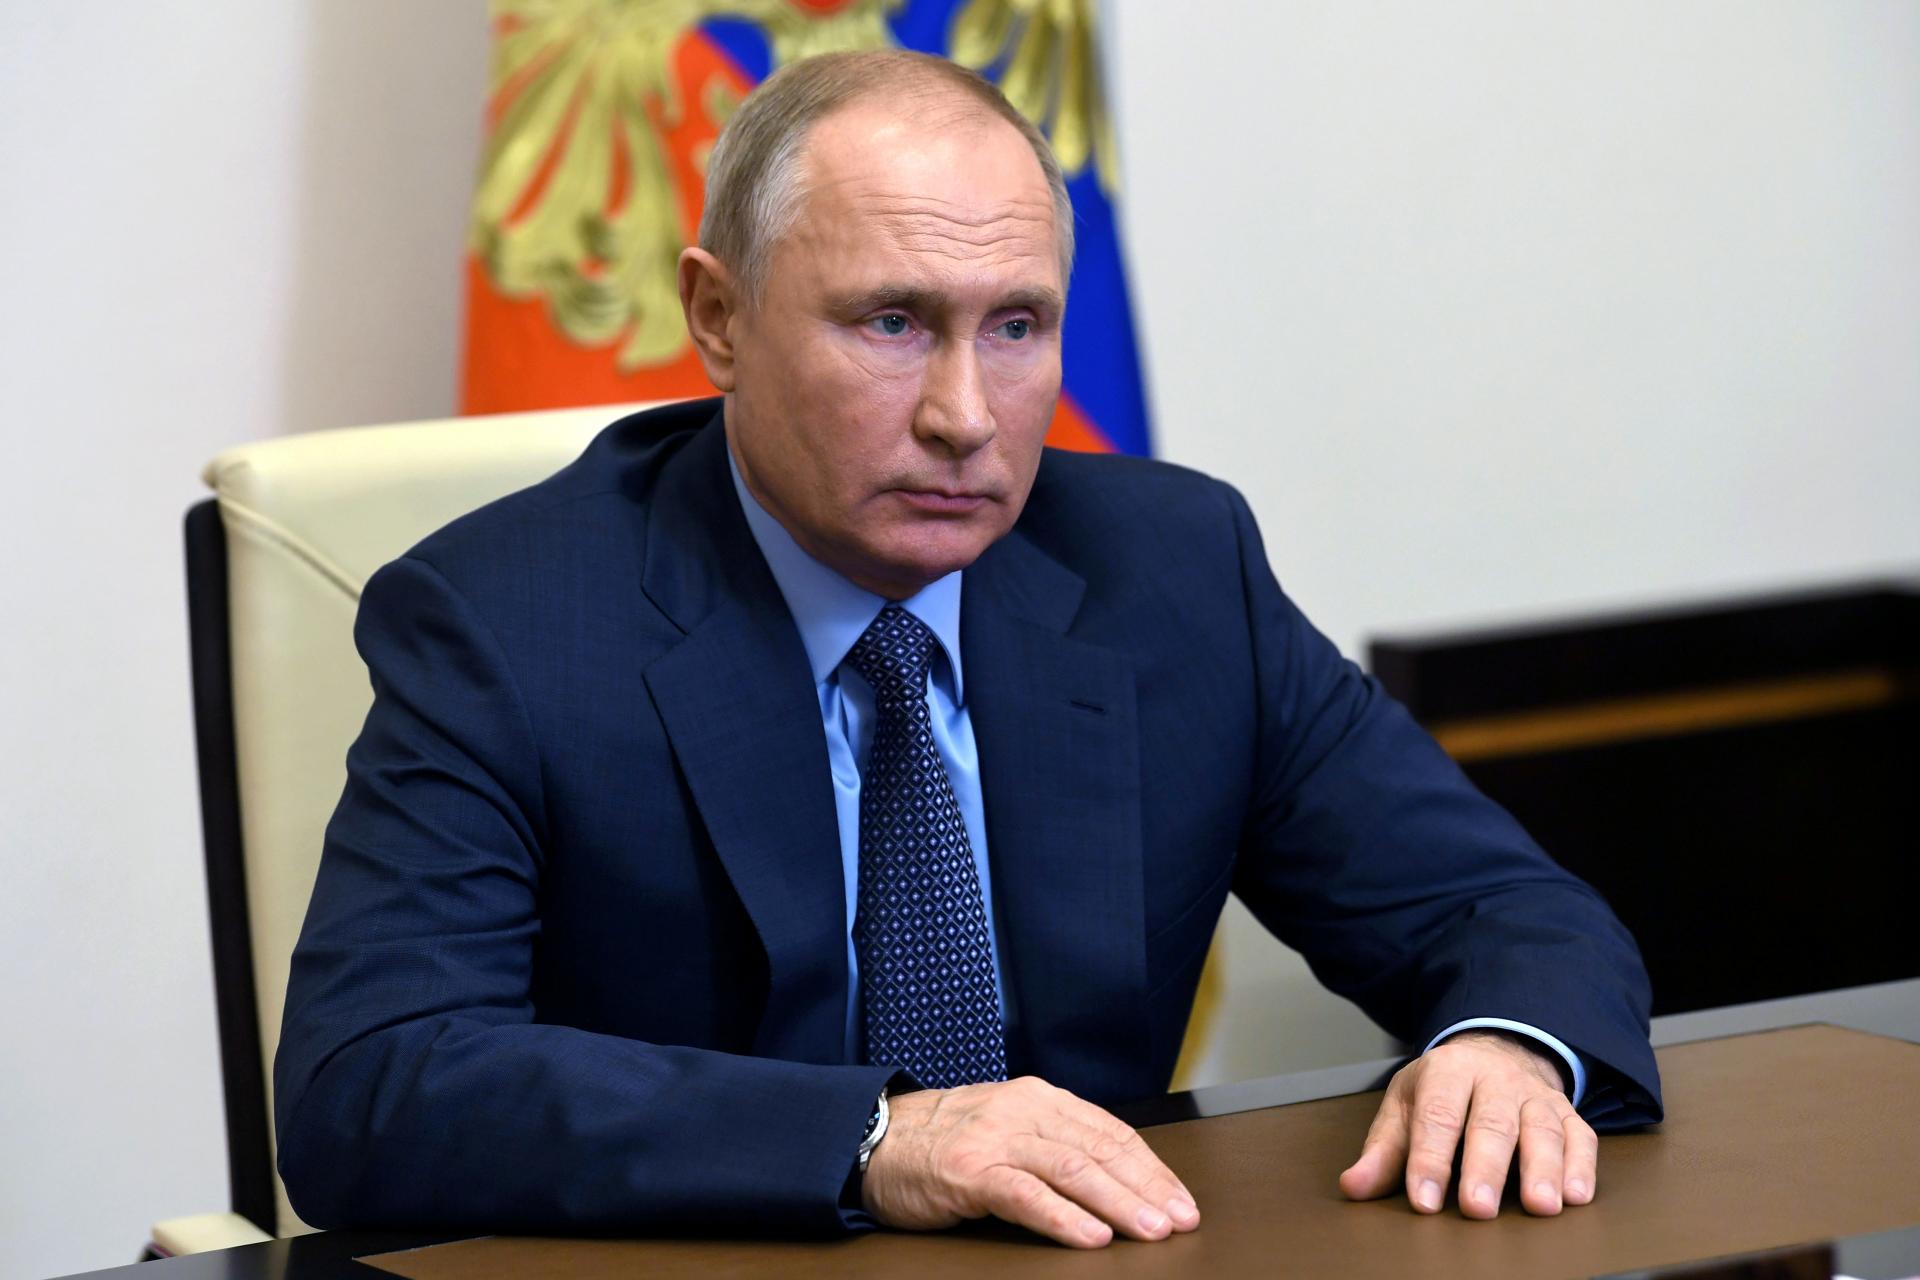 Rossiya prezidenti Vladimir Putin koronavirusga qarshi emlandi